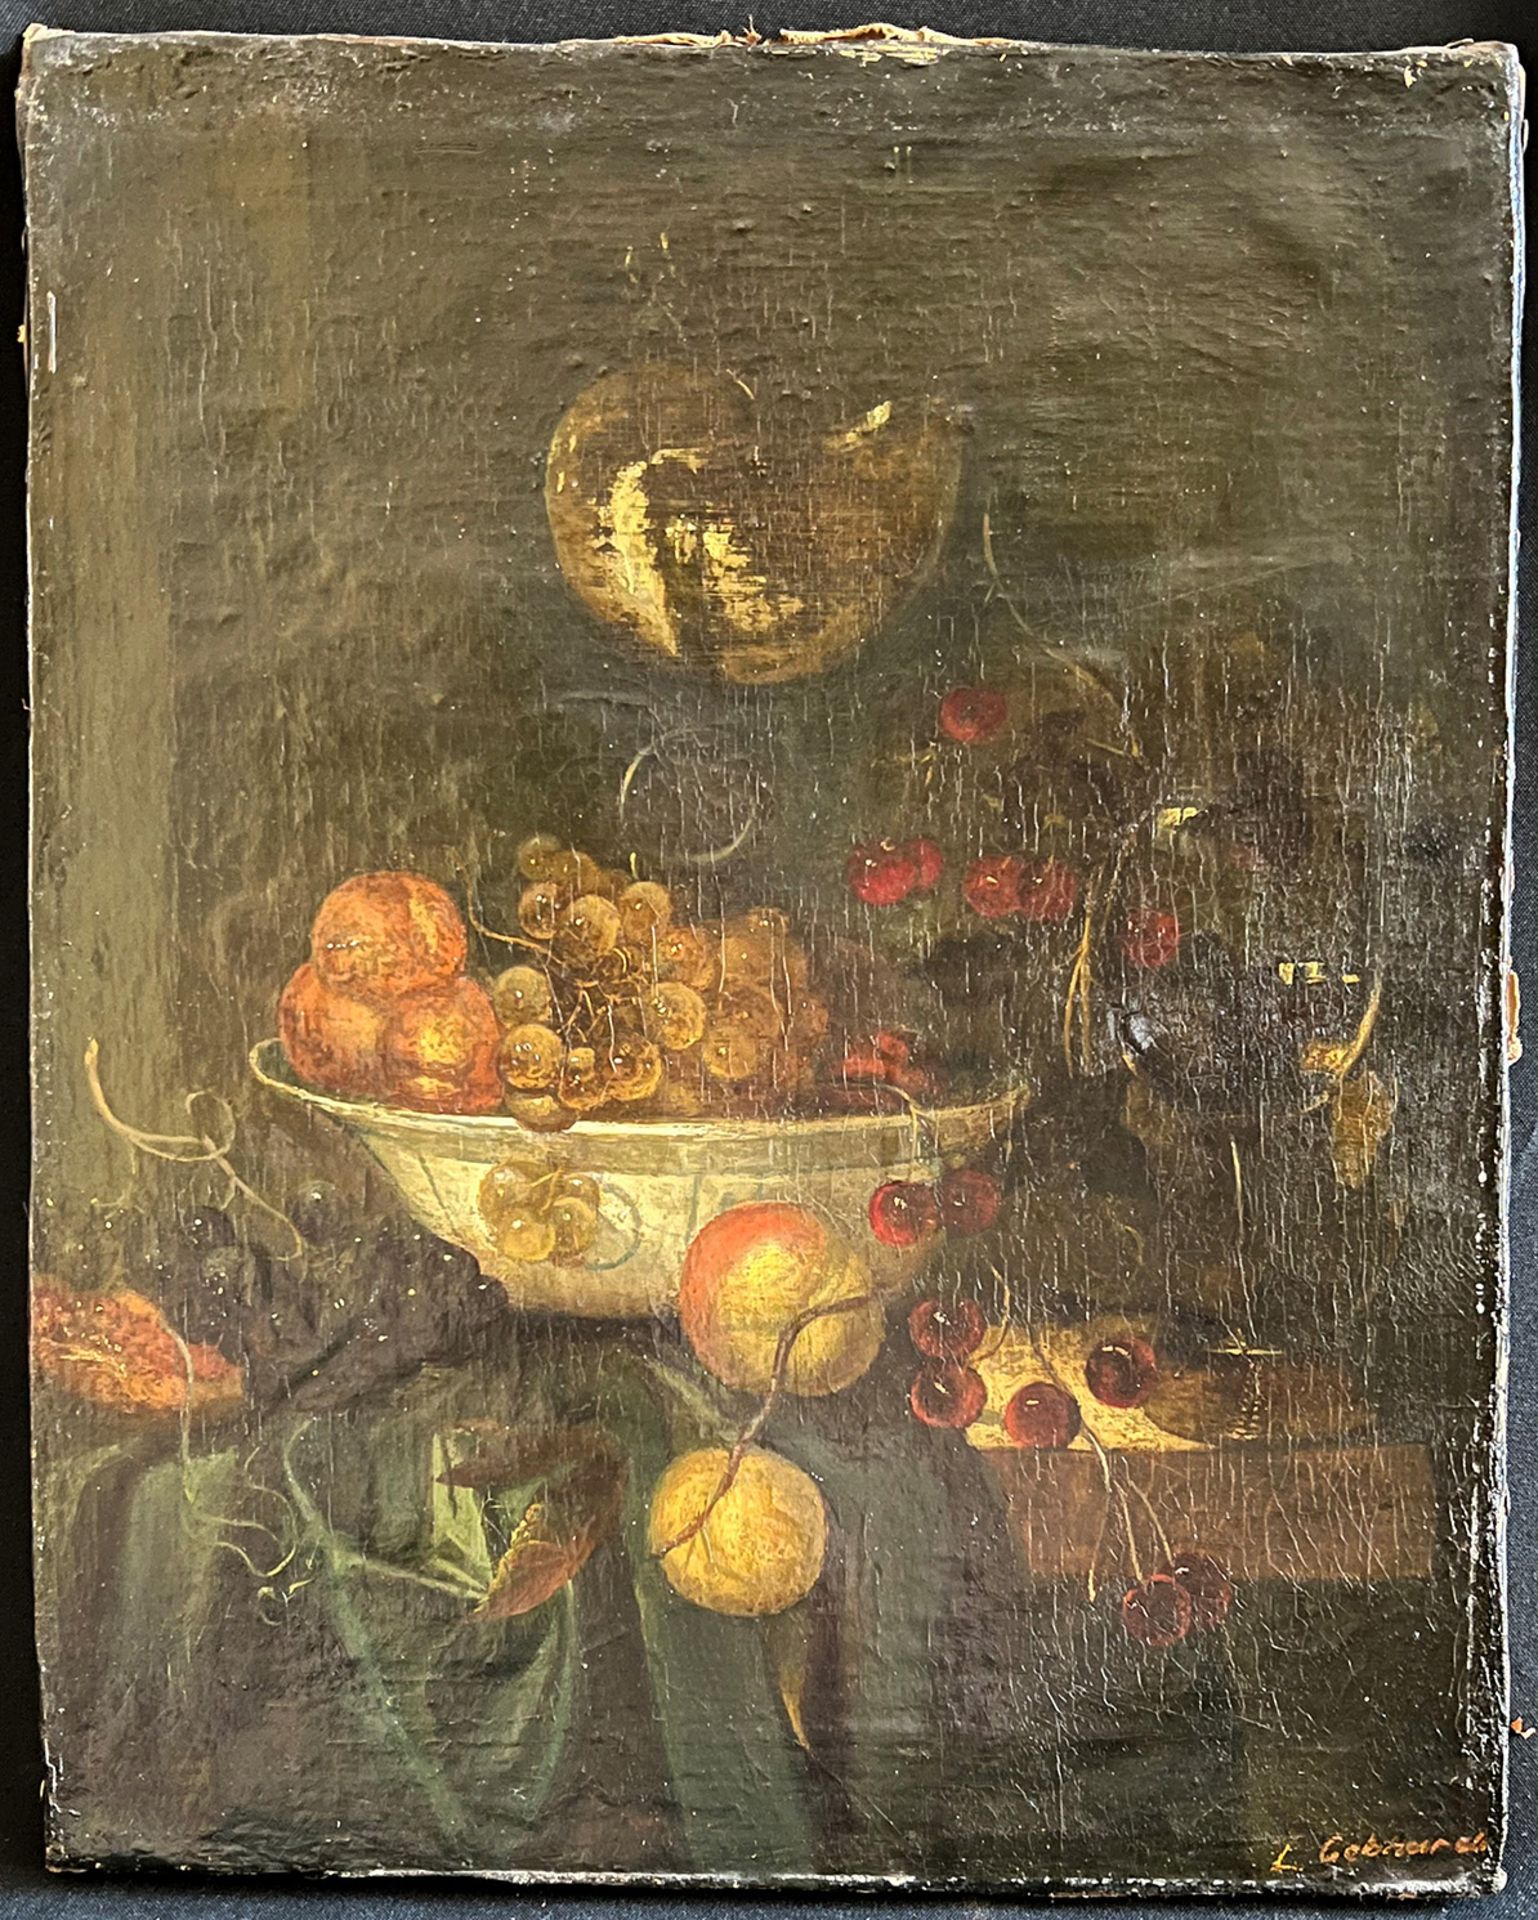 L. Gebhard, 19. Jh., Obststilleben in weißer Schale, signiert, Öl/Lwd, Altersspuren, 41 x 33 cm - Bild 4 aus 5